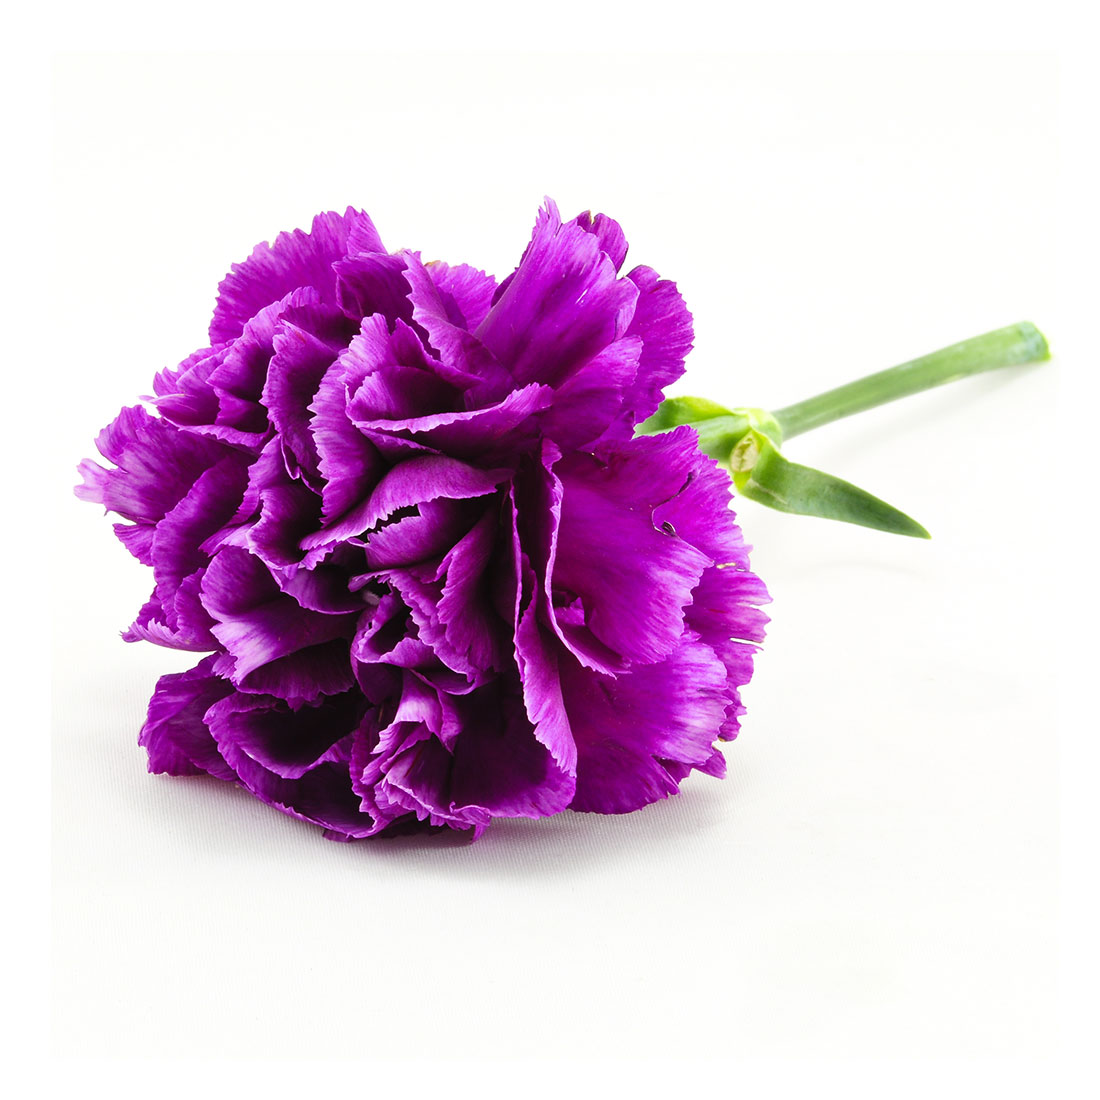 Tổng hợp hình ảnh hoa cẩm chướng tím đẹp nhất - [Kích thước hình ảnh: 1100x1100 px]